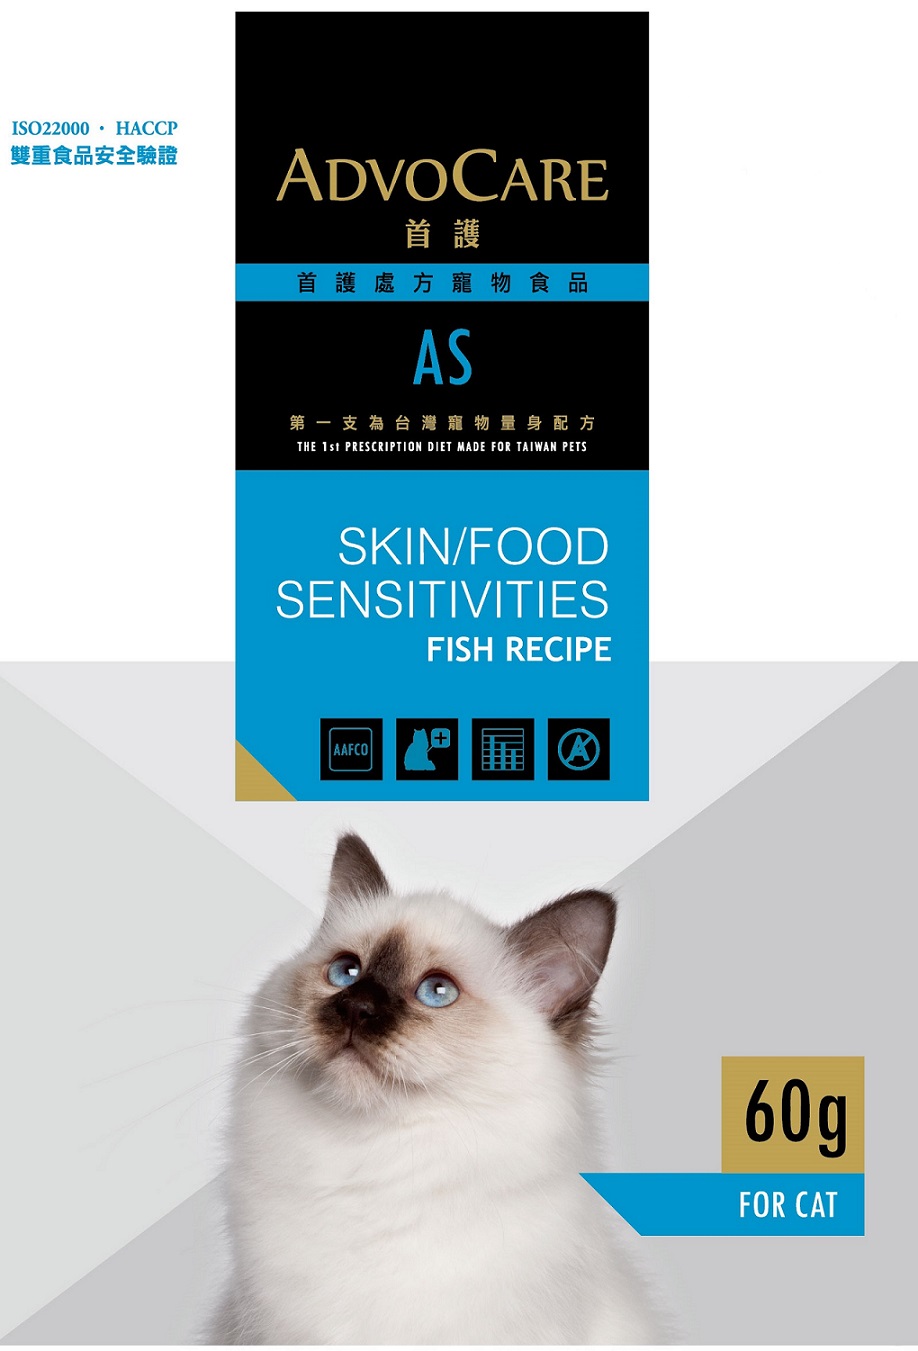 首護皮膚及食物敏感處方貓用食品-白身魚配方
